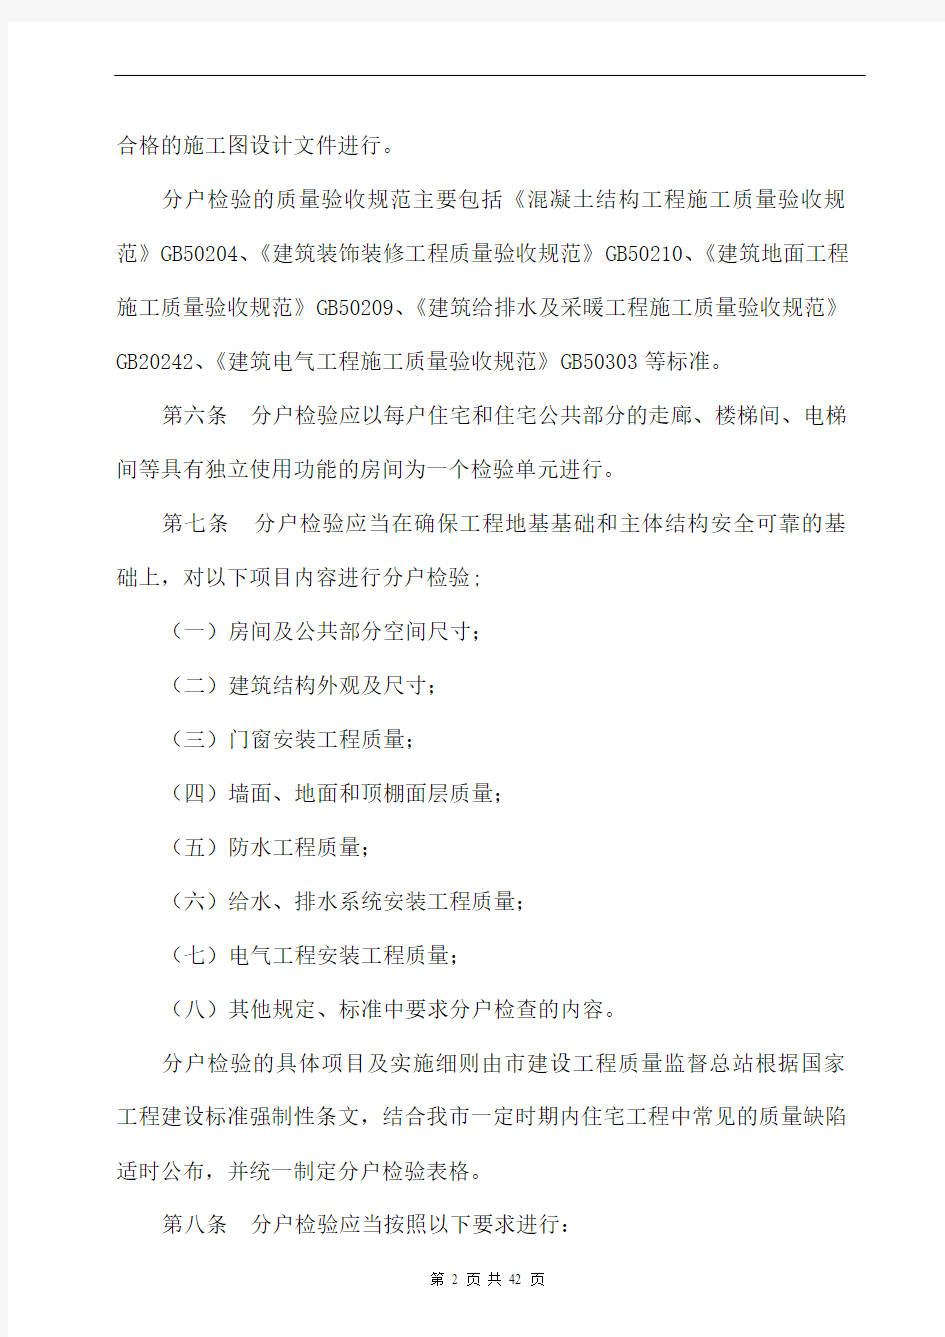 重庆市分户验收文件及表格